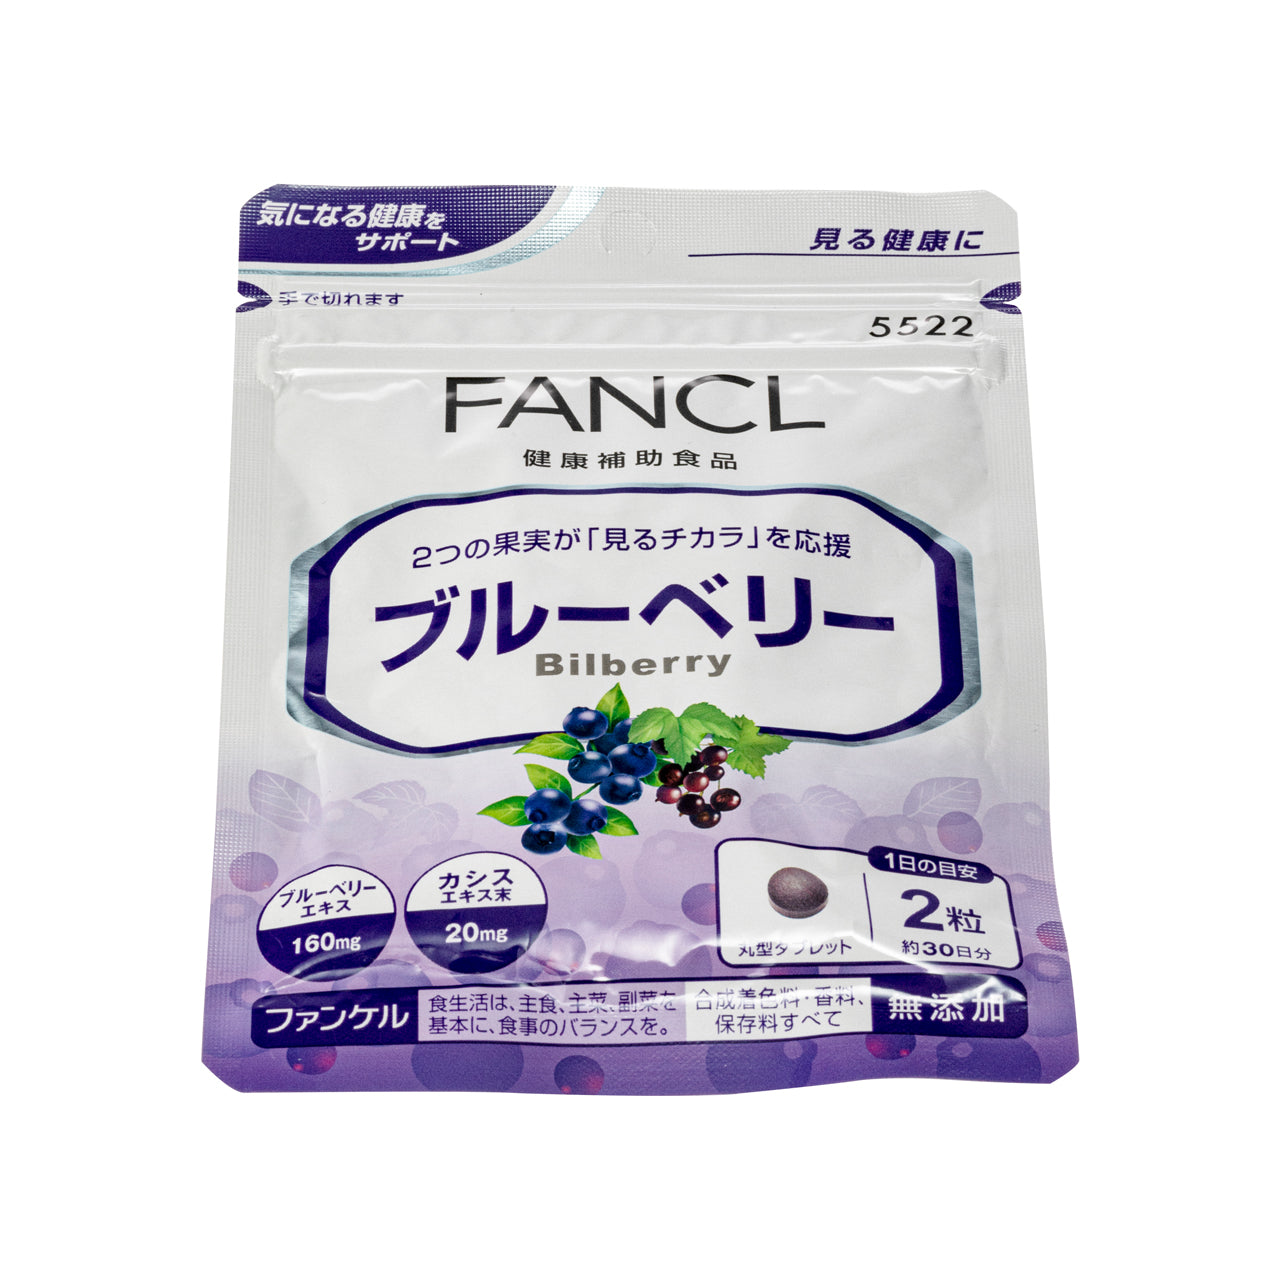 Fancl Bilberry 60 Tablet Fancl